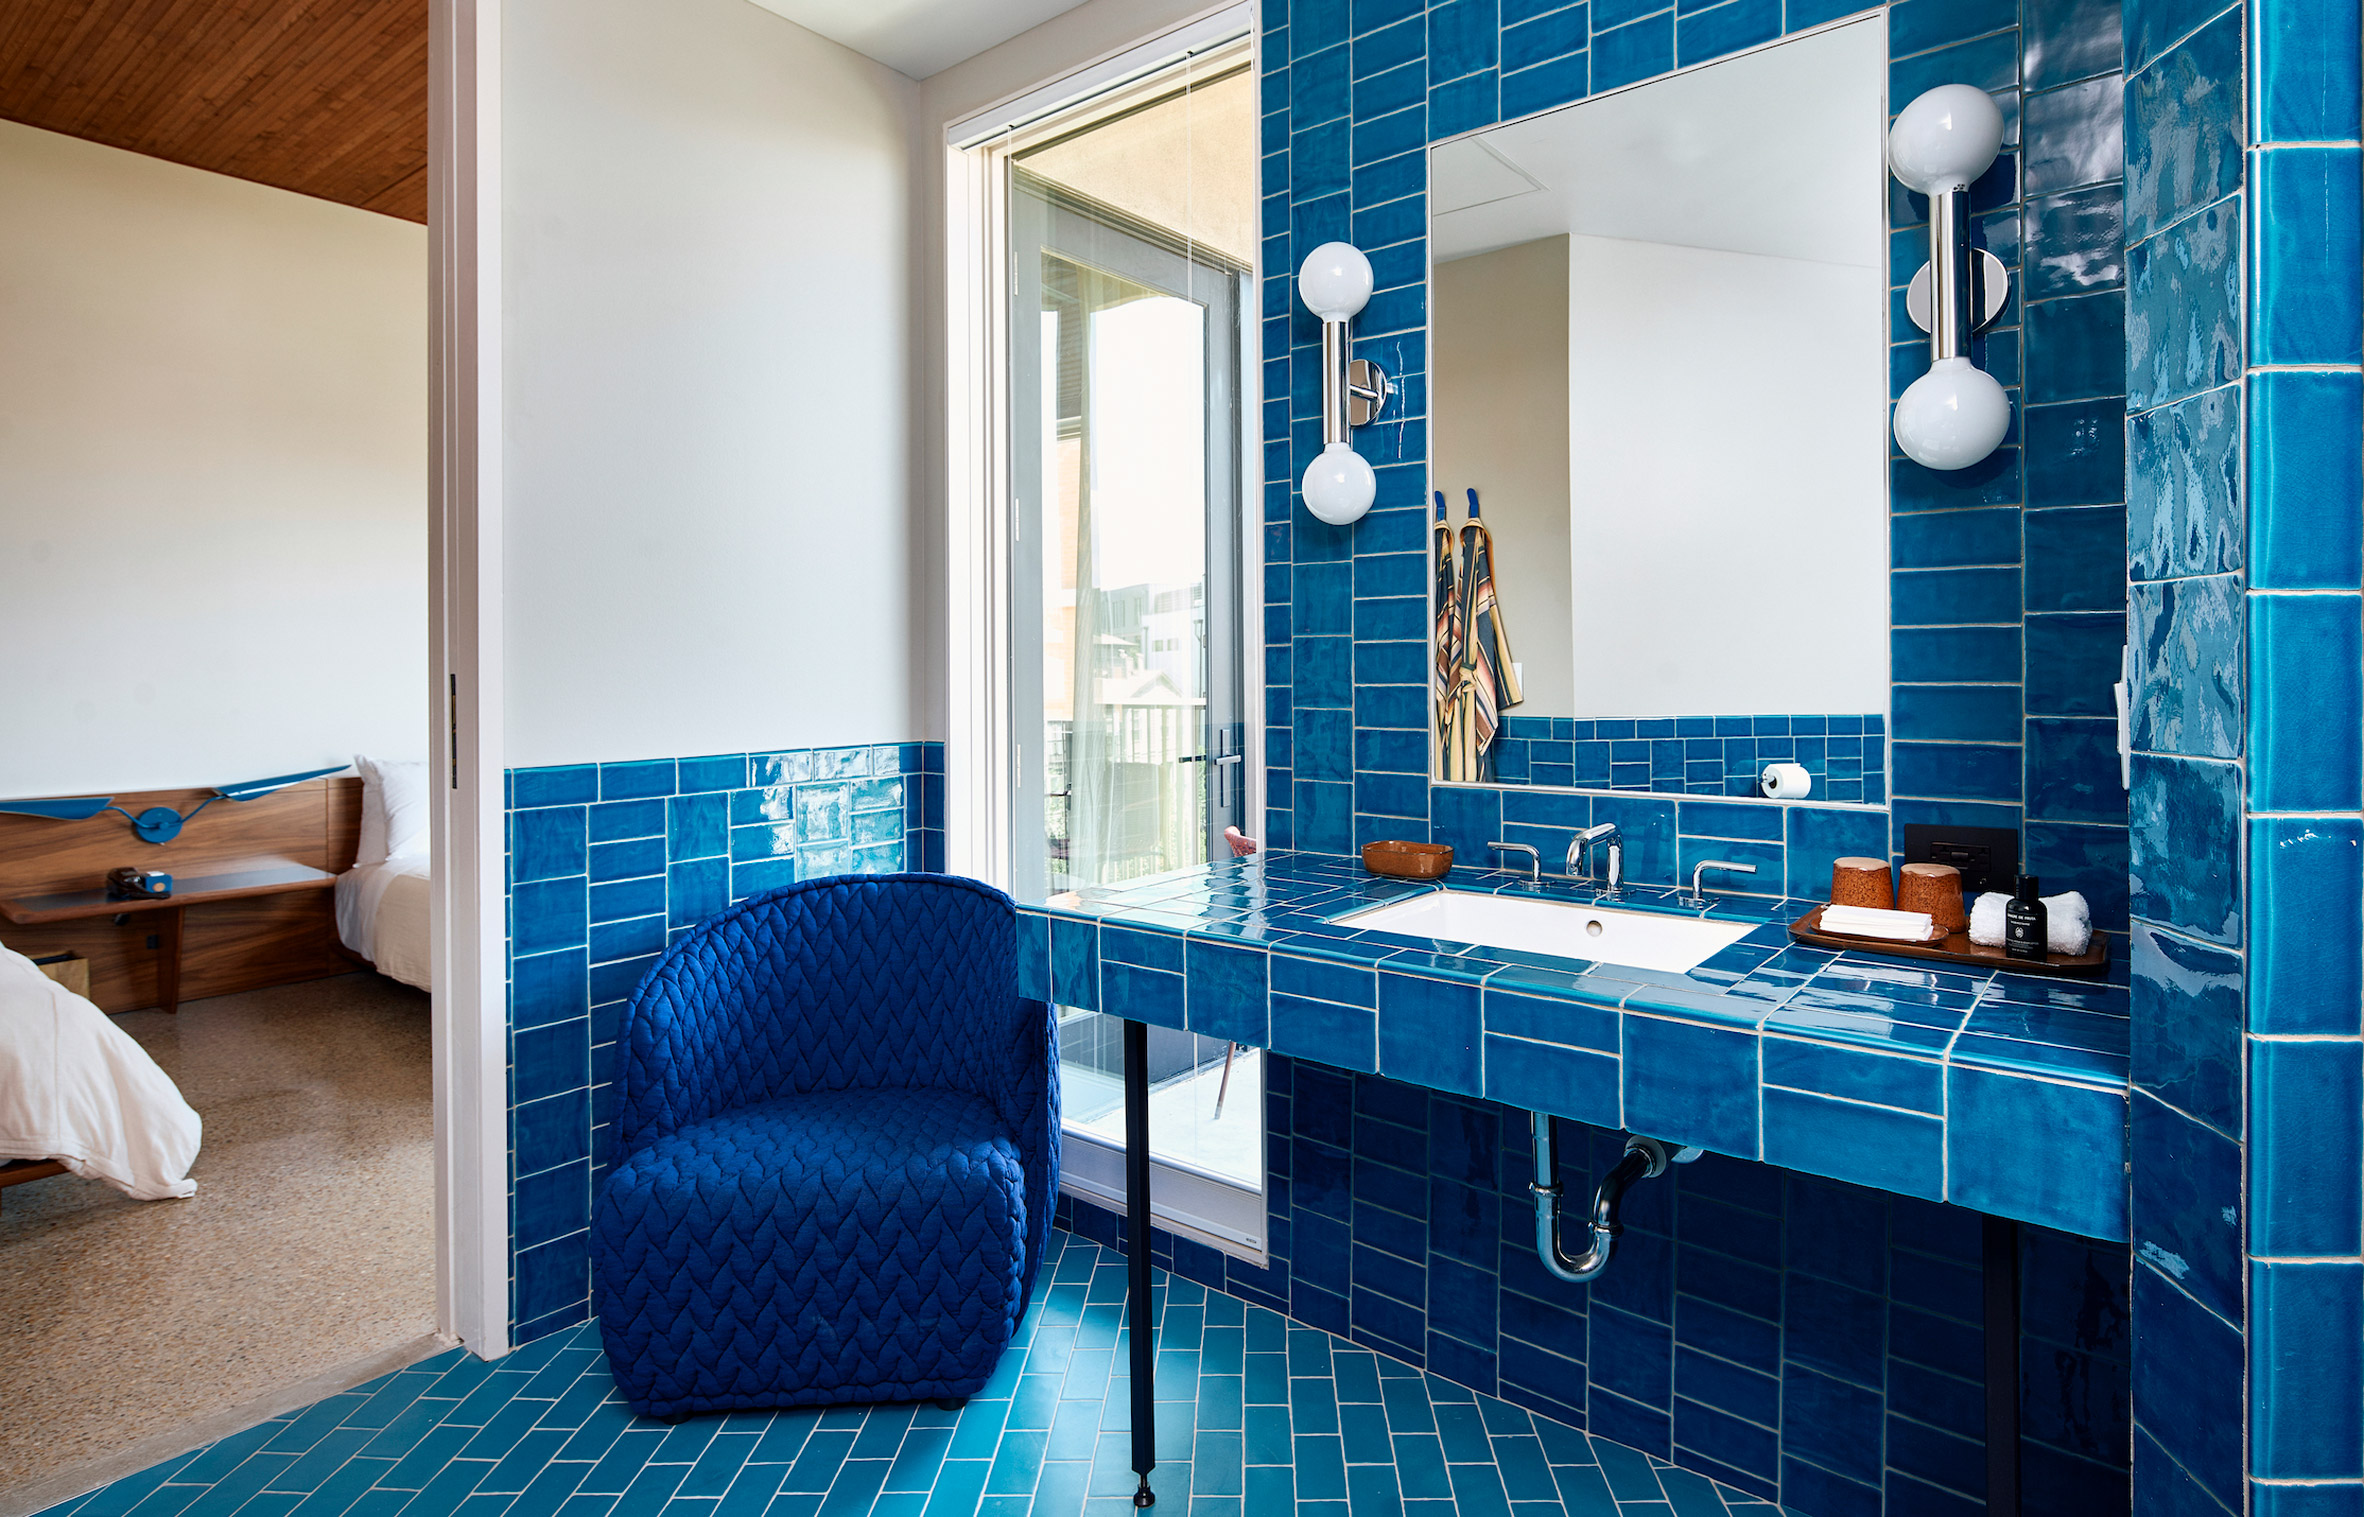 A blue tiled bathroom